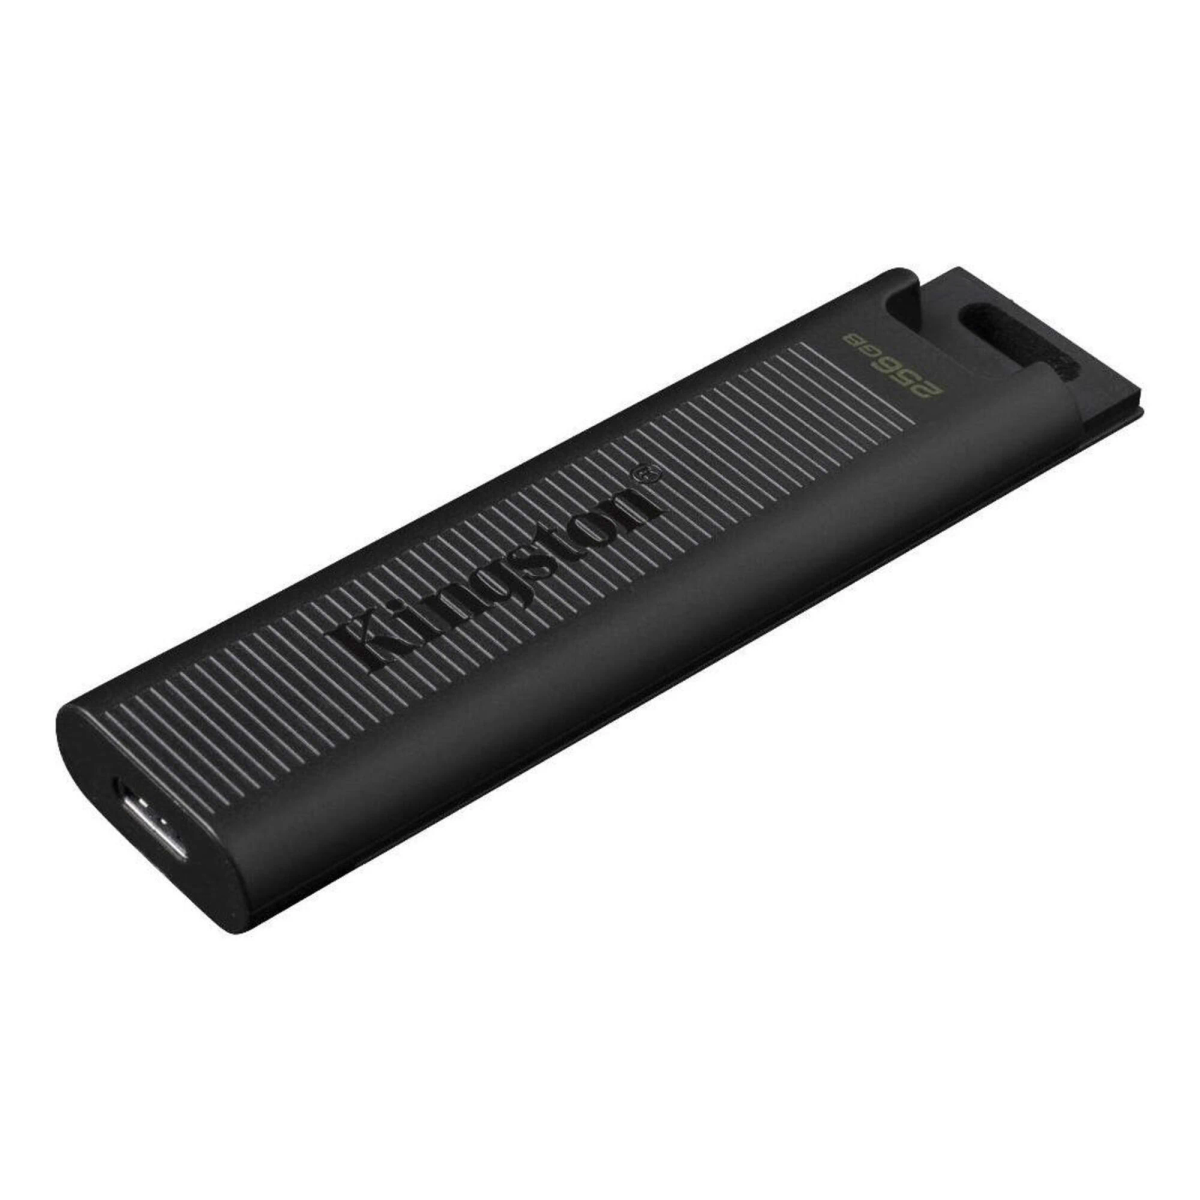 256 DTMAX/256GB KINGSTON GB) Stick USB (darkslategray,